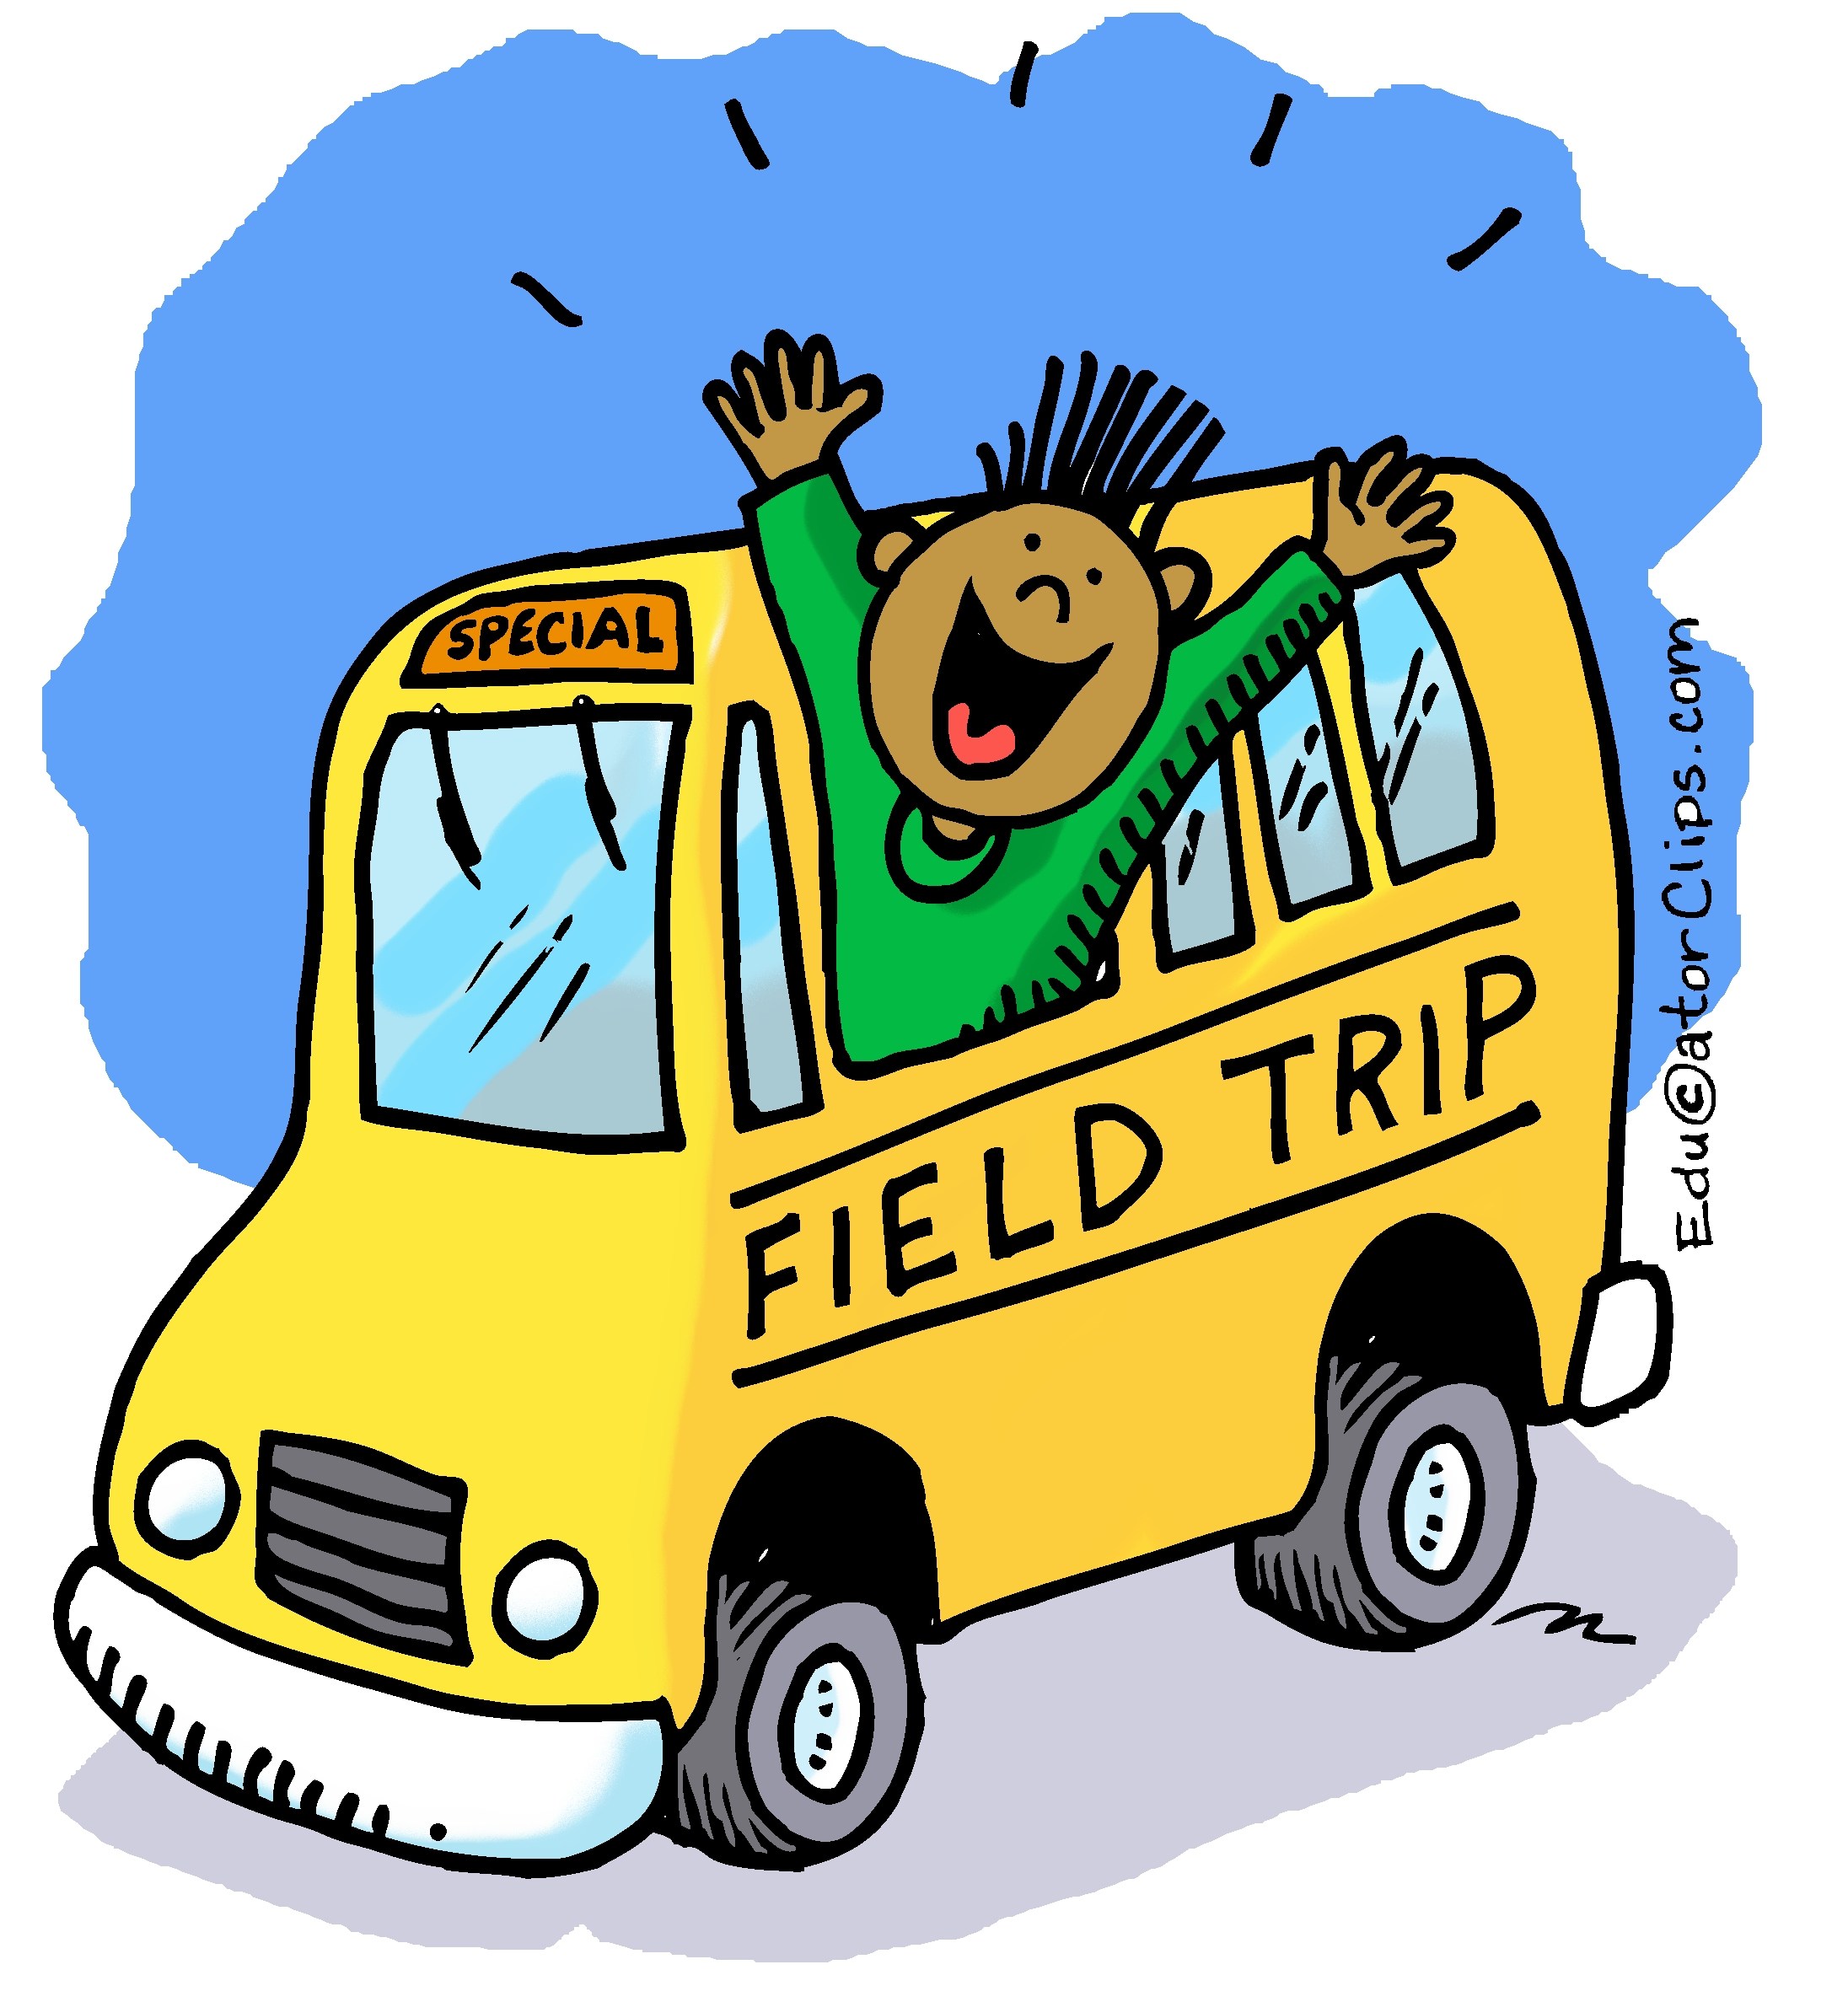 Field trip bus clipart